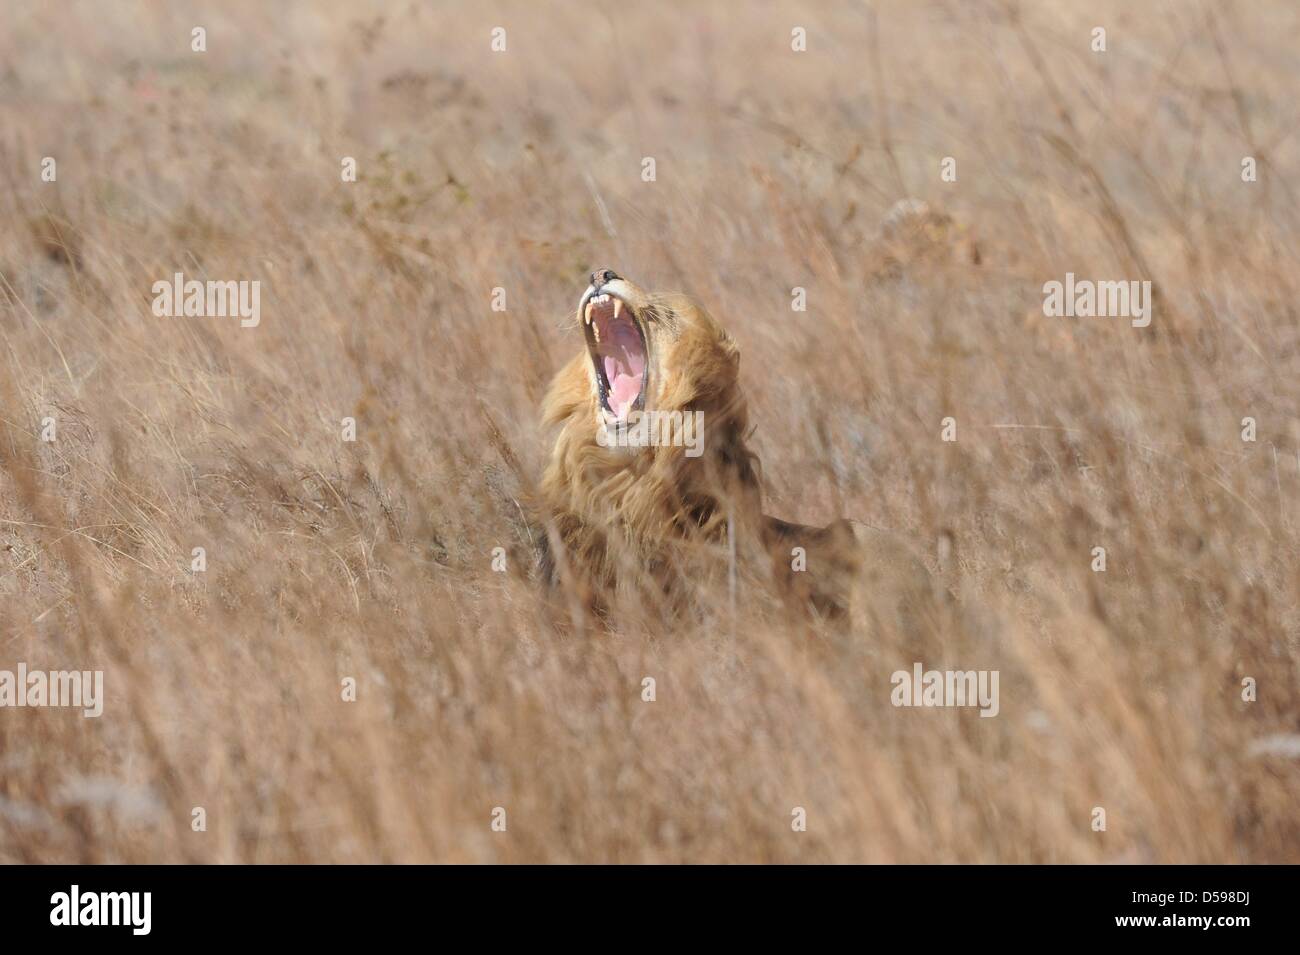 Un leone si appoggia nell'erba alla Rhino e Lion Riserva Naturale, circa quaranta chilometri a nord di Johannesburg, Sud Africa 15 Giugno 2010. La riserva è l'habitat di rinoceronti, leoni, bufali, ippopotami e altri animali domiciliato in Sud Africa. Foto: Achim Scheidemann Foto Stock